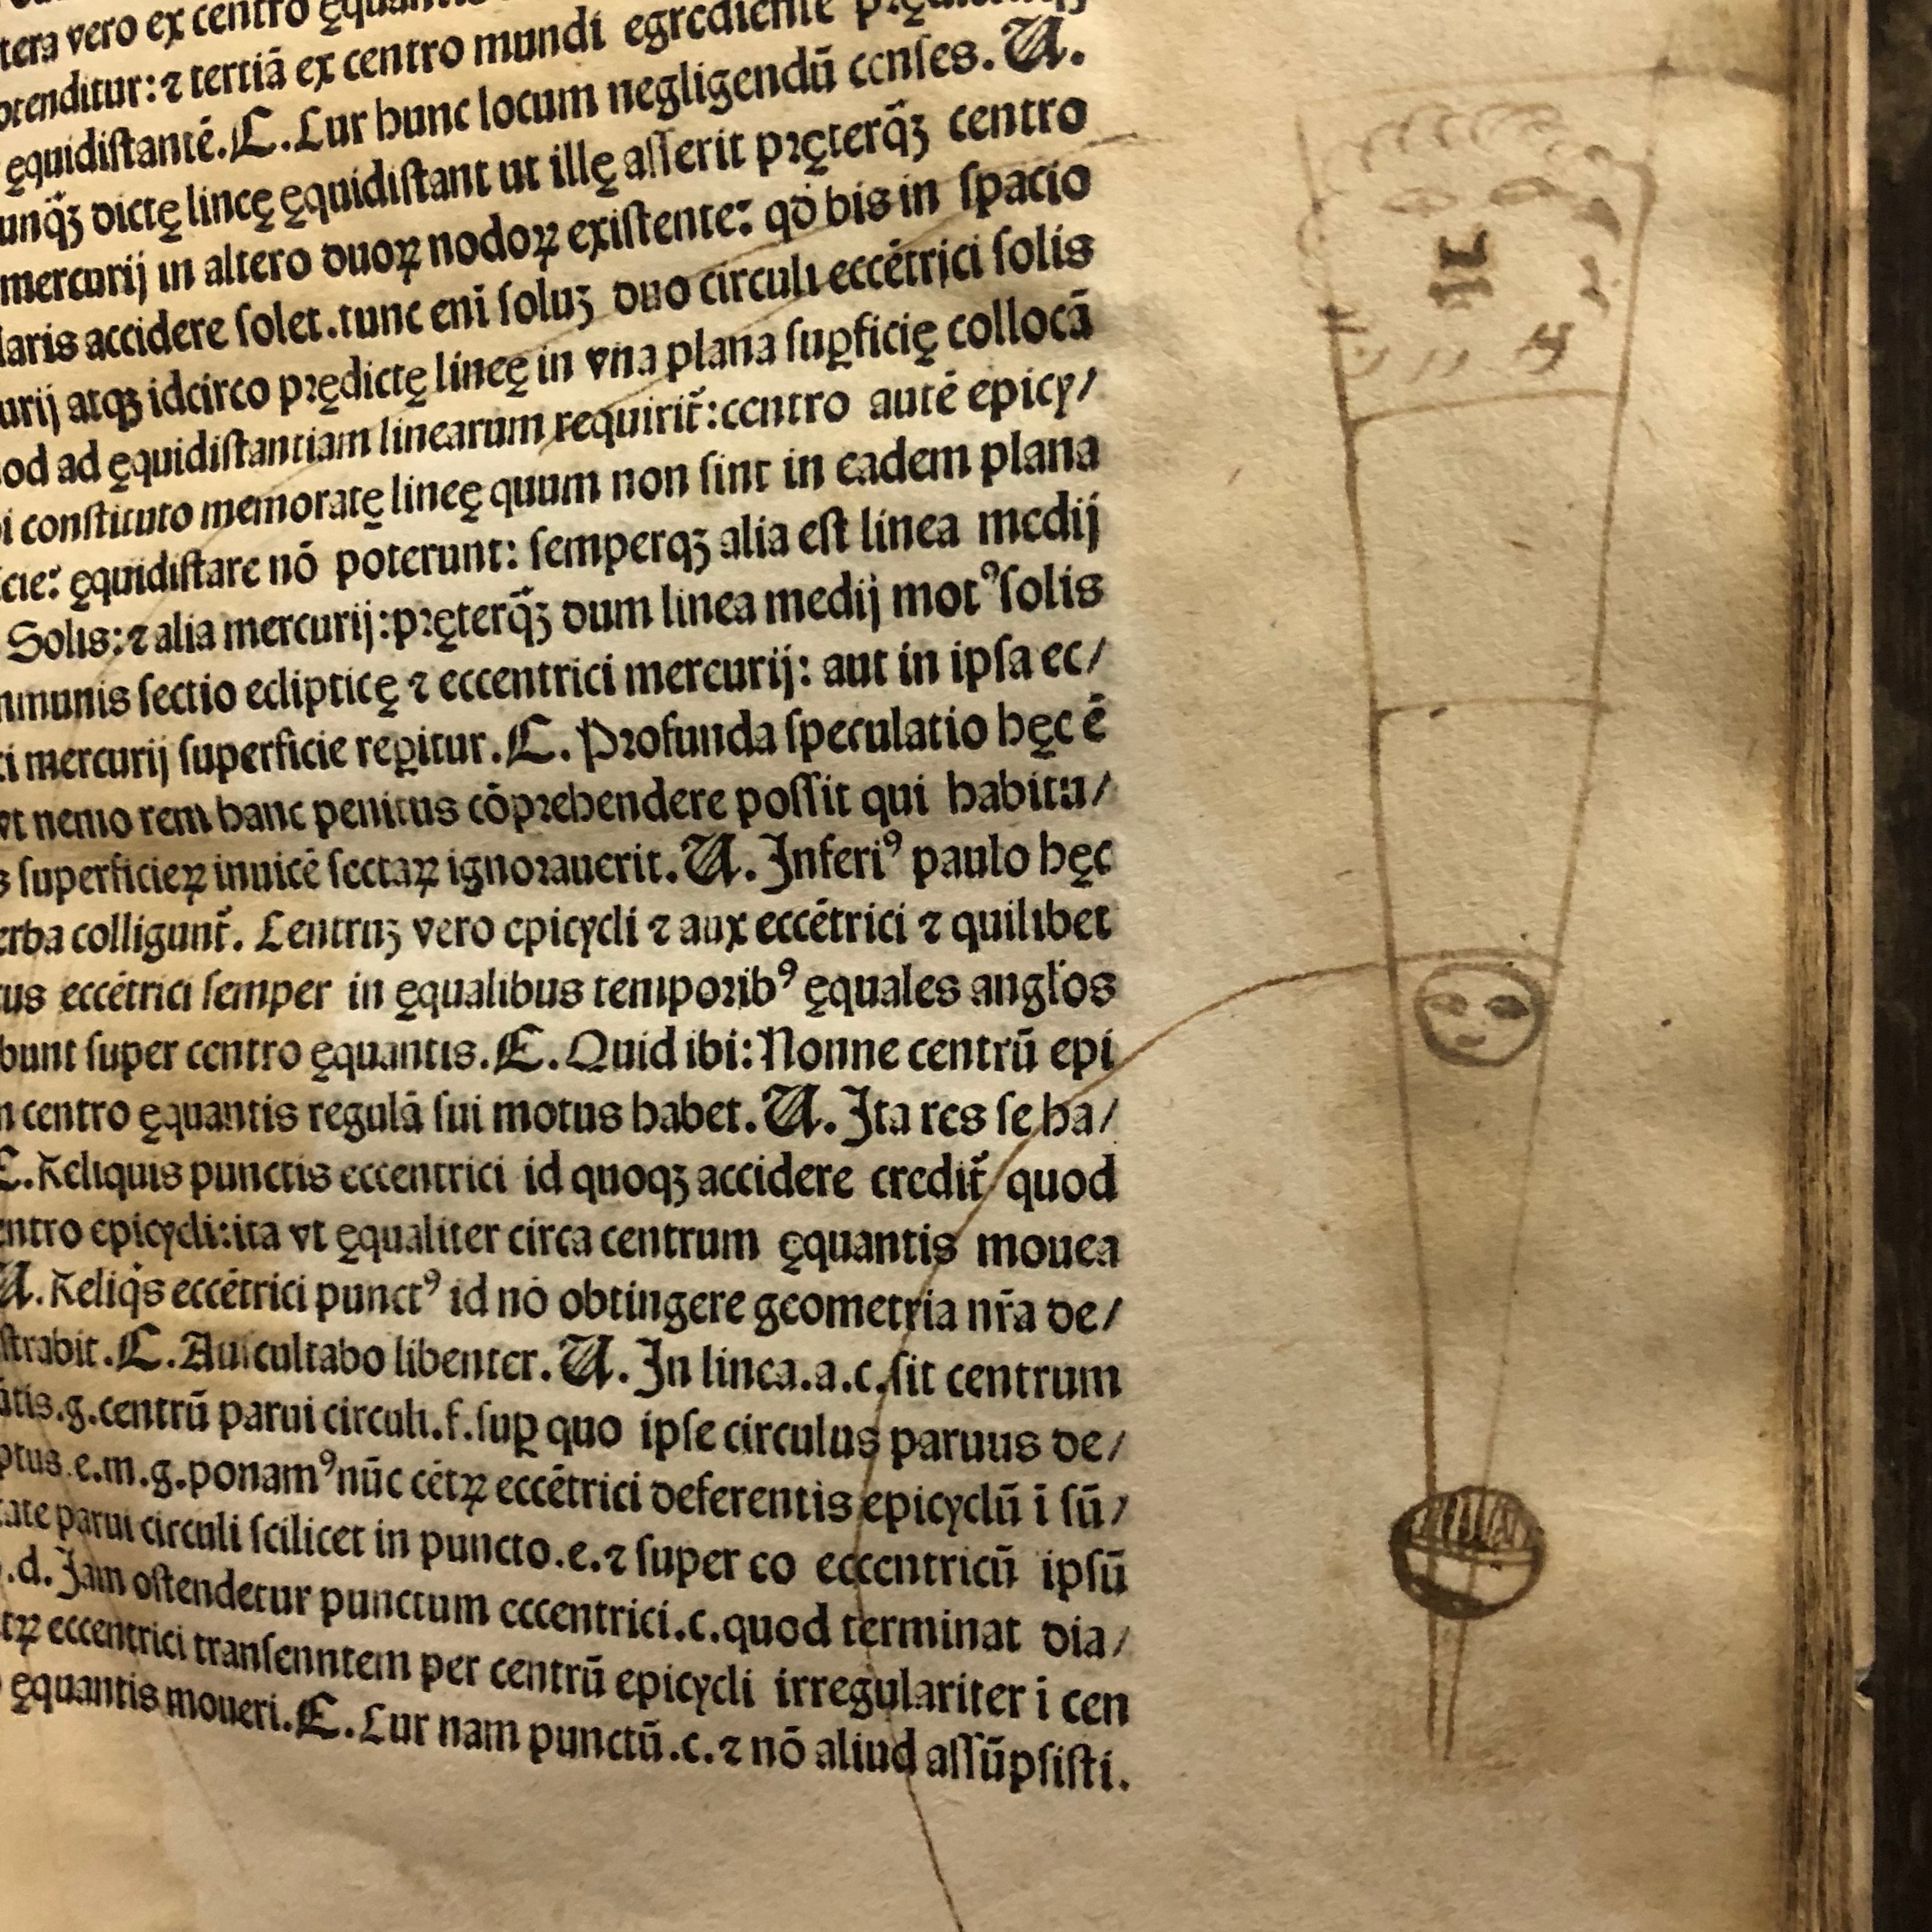 Drawing of a heliocentric universe in 'Nouicijs adolescetib': ad astronomica remp: capessenda aditu impenetratib' by Johannes de Sacro Bosco, 1482, Venice (Maddison Collection, 1D1) 